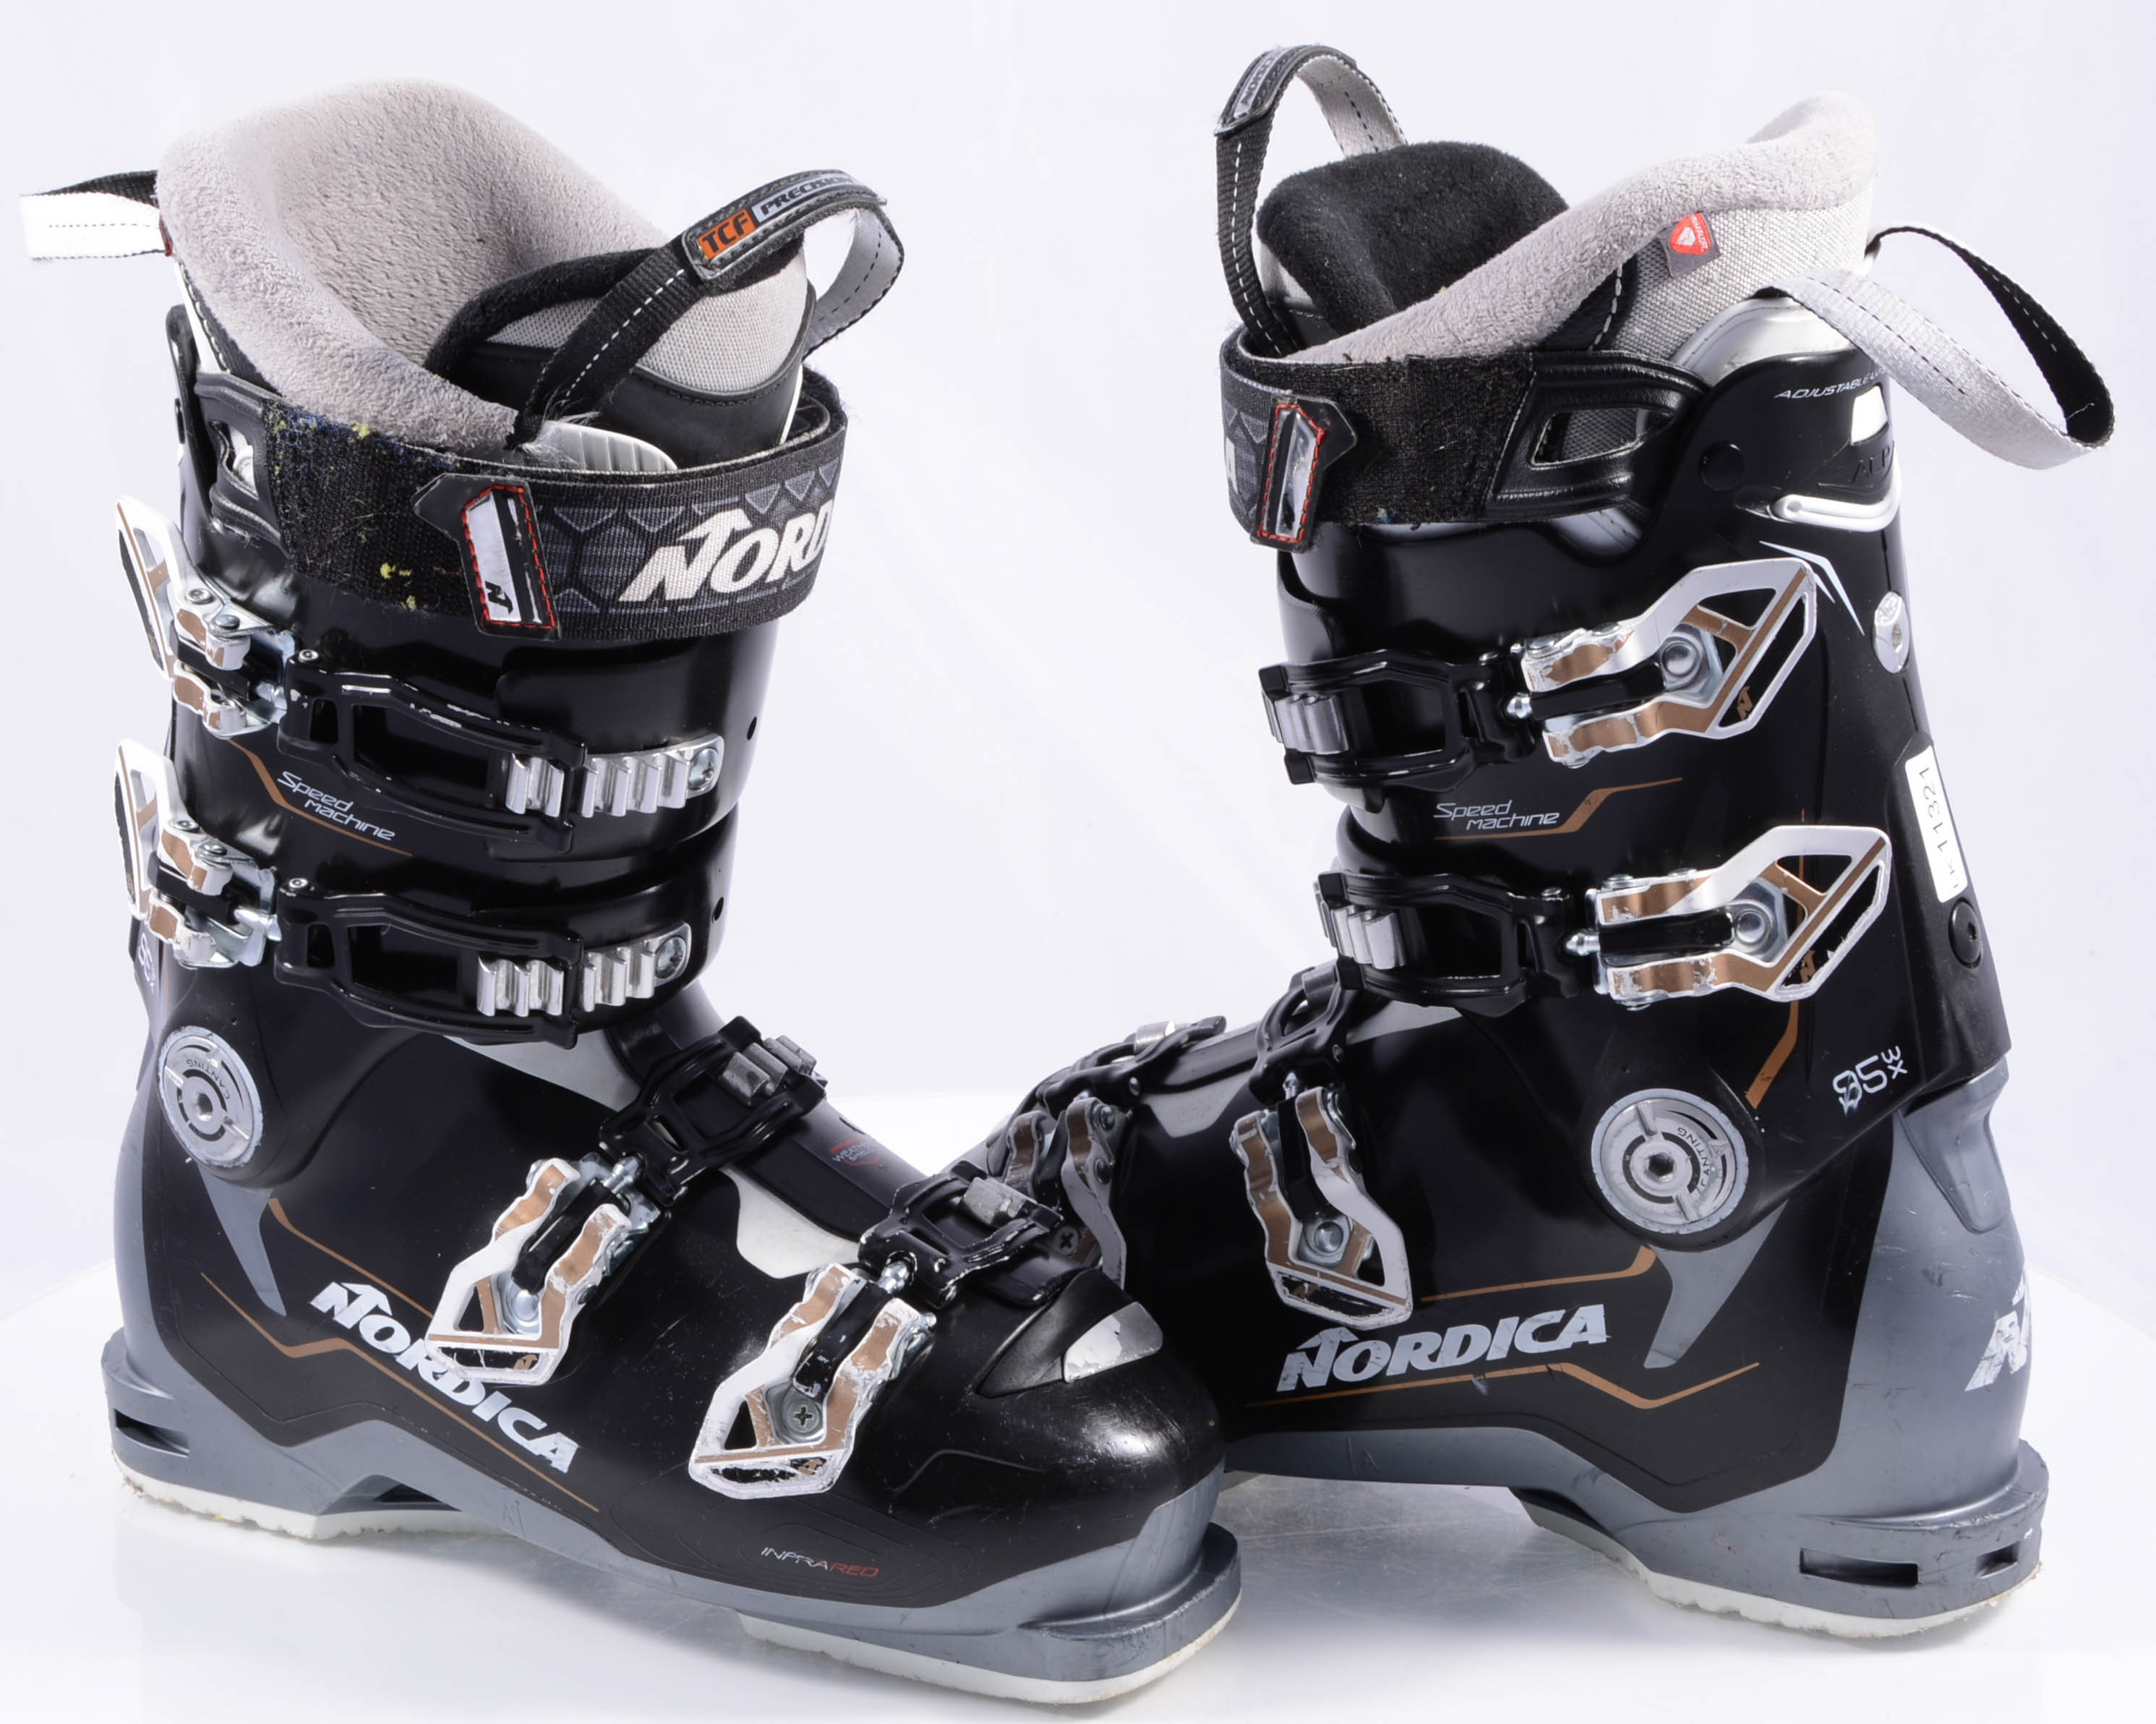 tegel pols Meander dames skischoenen NORDICA SPEEDMACHINE 95 W X 2021, grip walk, tri-force  shell, 3D cork fit liner, black/white - Mardosport.nl